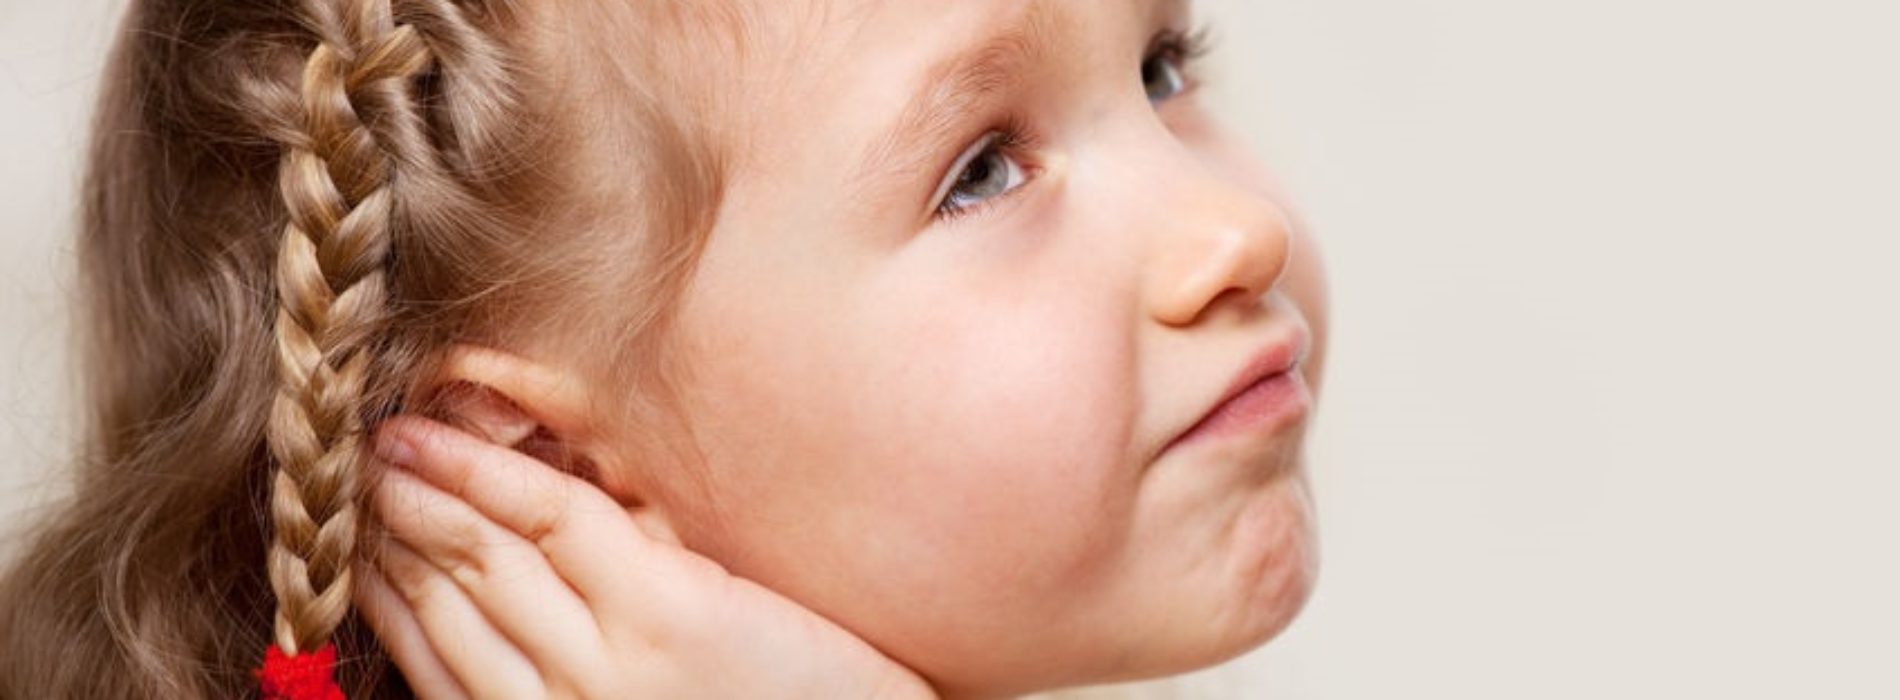 Zapalenie ucha – co to? Objawy, ile trwa i jak leczyć?